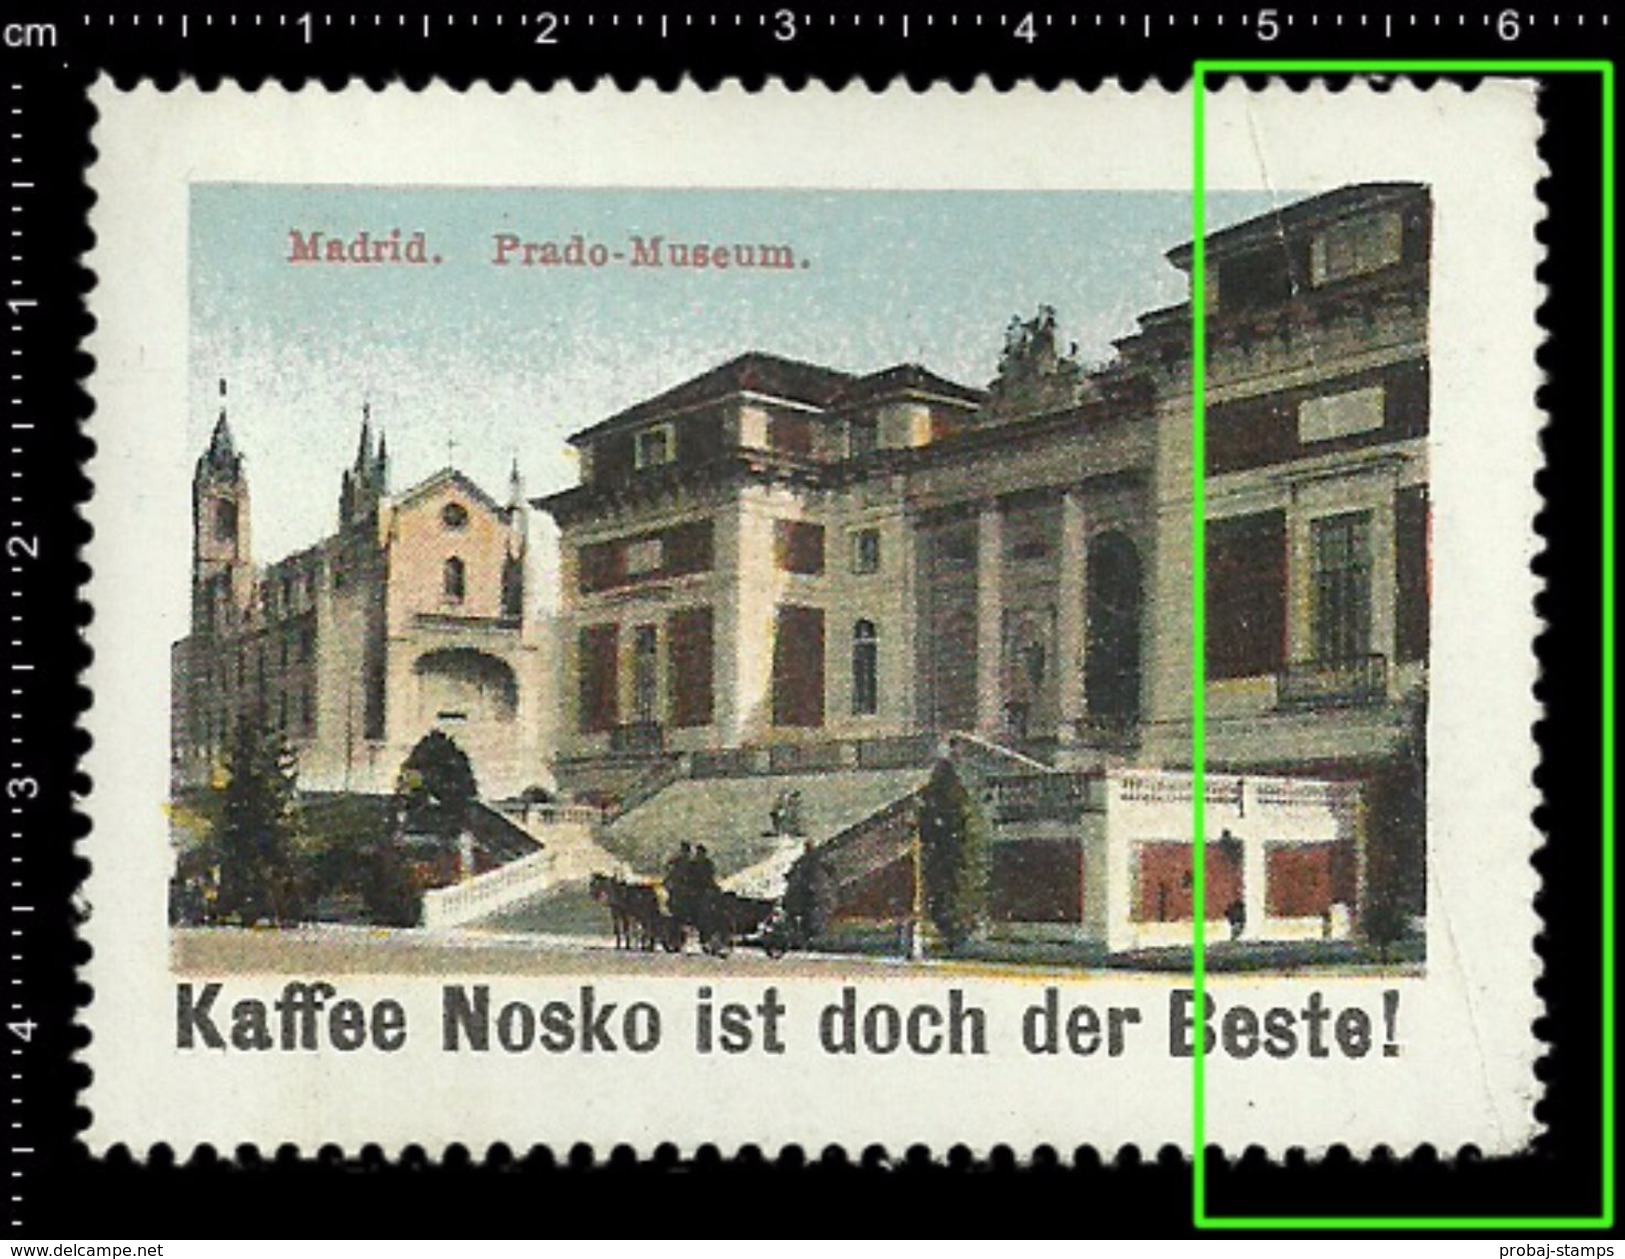 German Poster Stamps, Reklamemarke, Cinderellas, City View, Stadtblick, Madrid, Spain, Prado Museum - Cinderellas